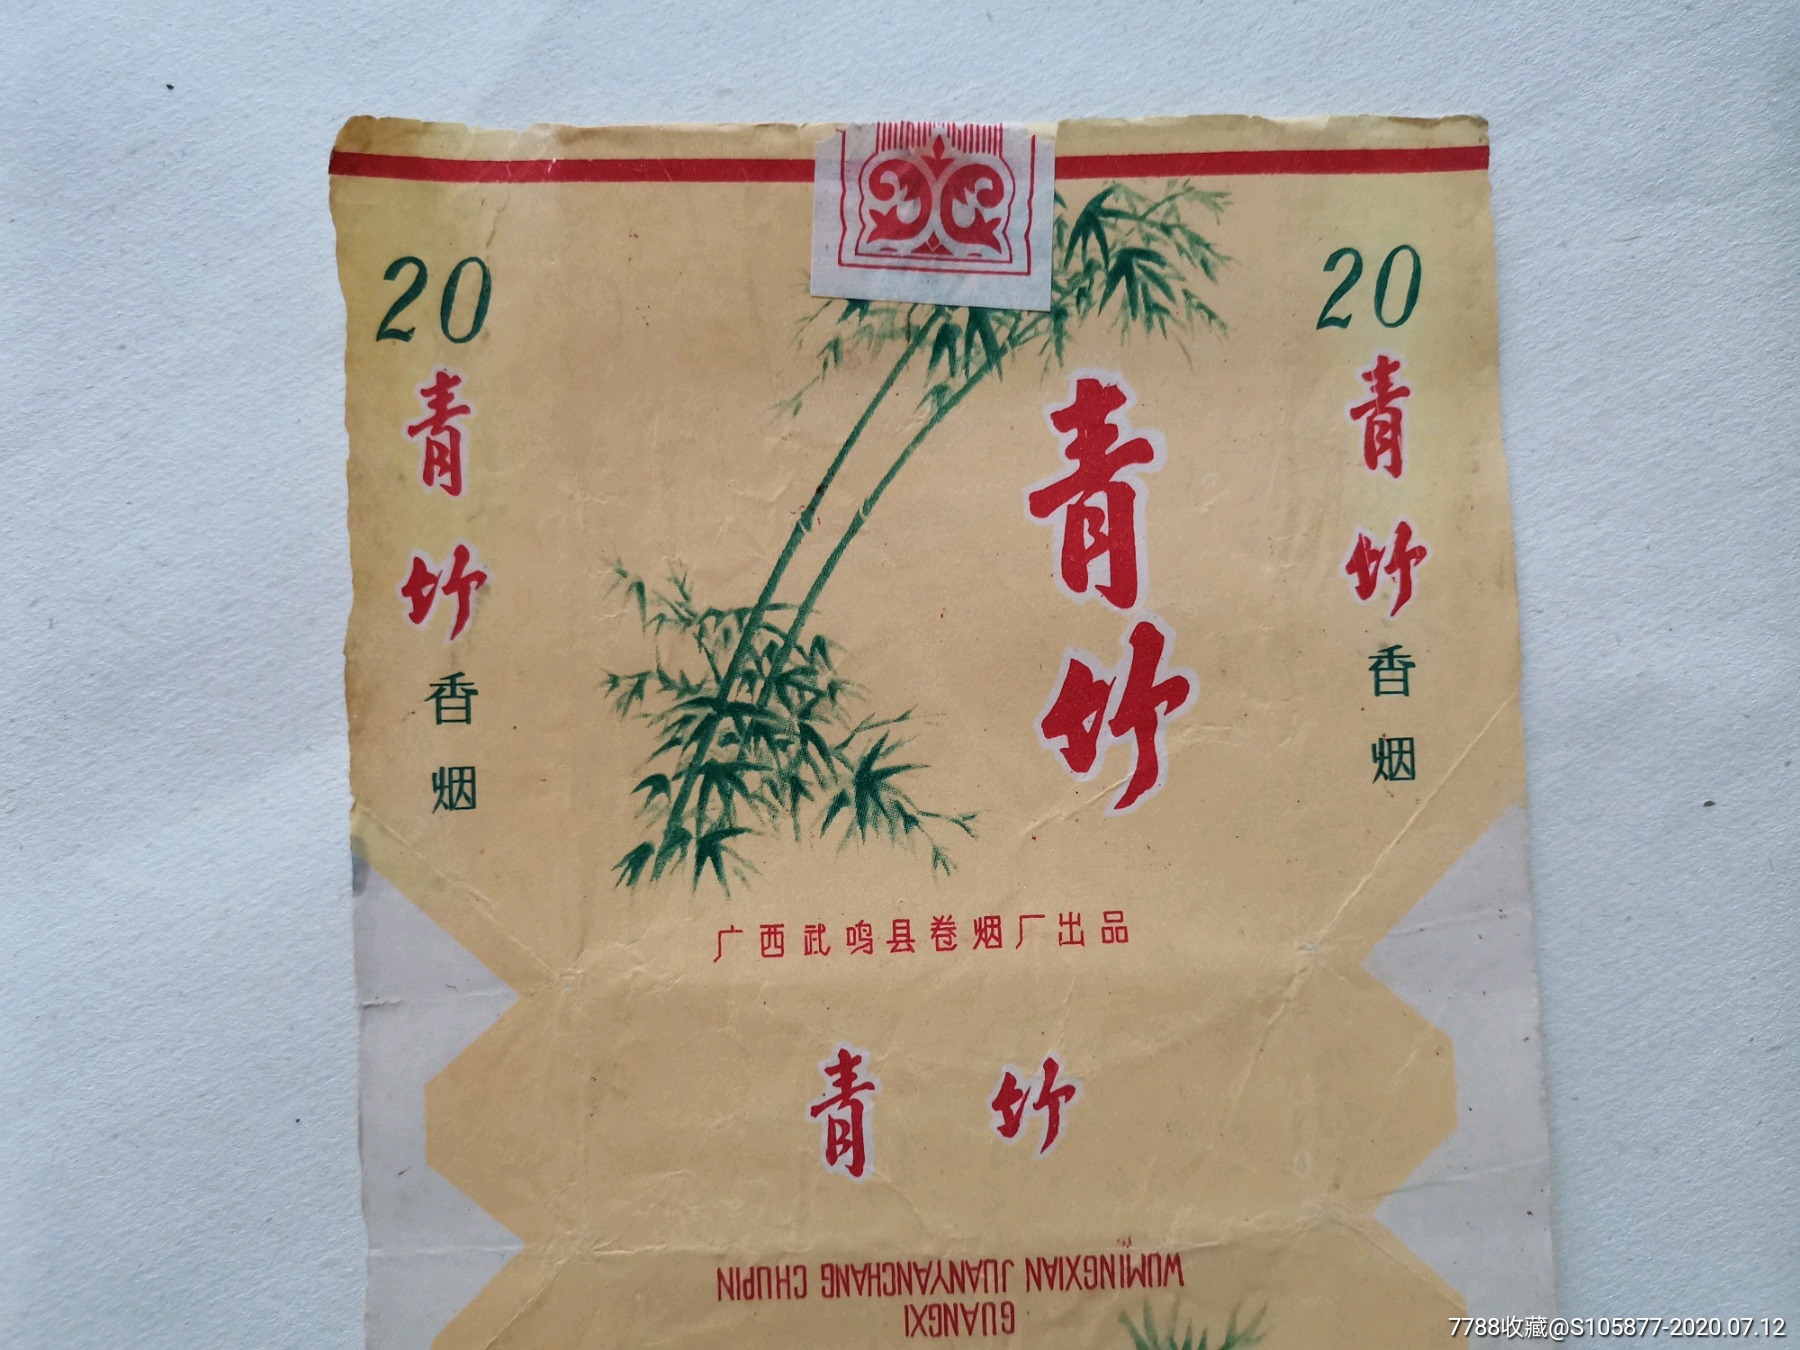 广西武鸣县卷烟厂出品的青竹香烟烟标一张